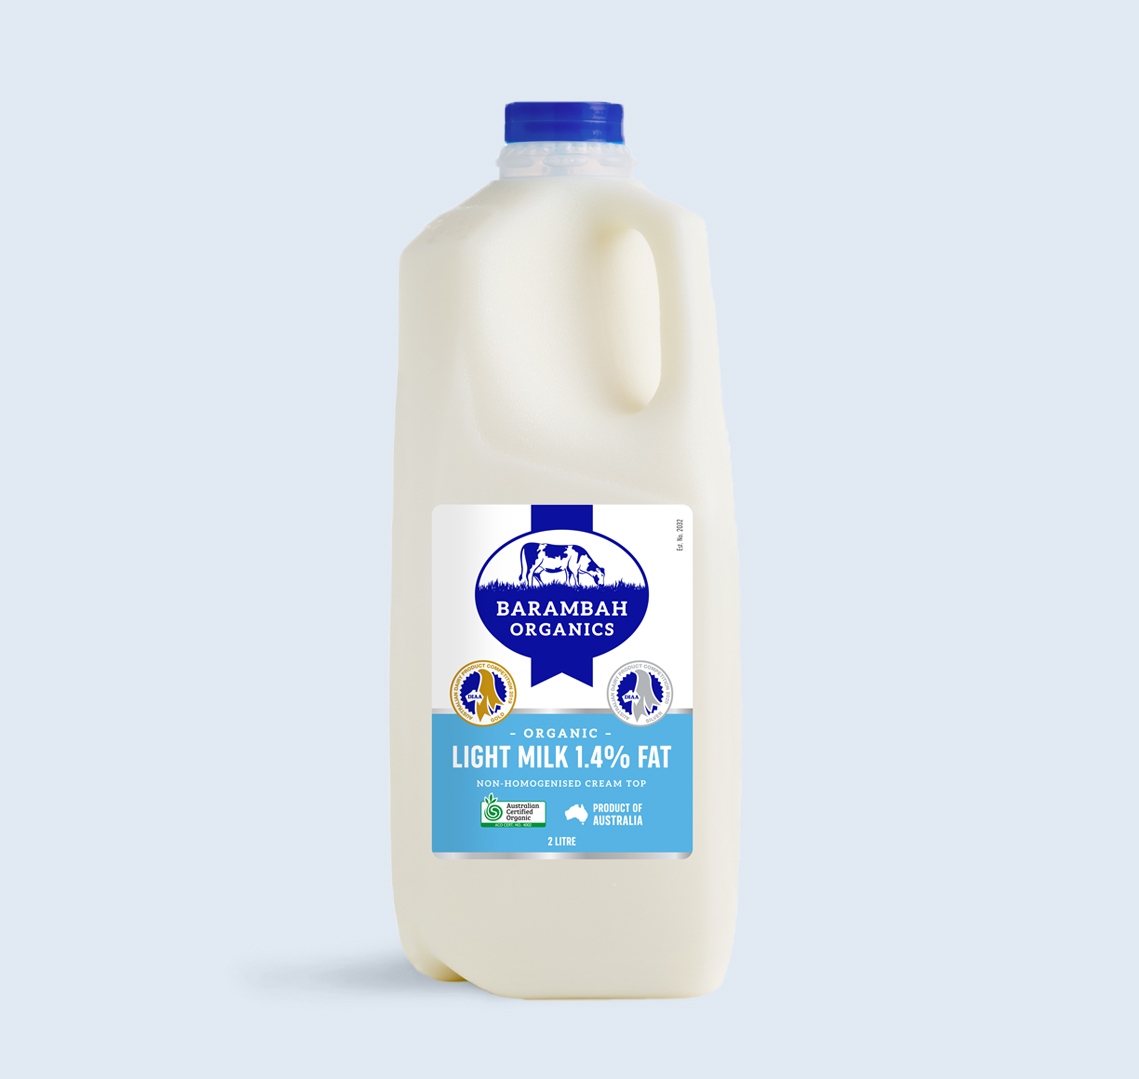 2 Liters of Light Milk 1.4% Fat - Organic Low Fat Milk - Barambah Organics